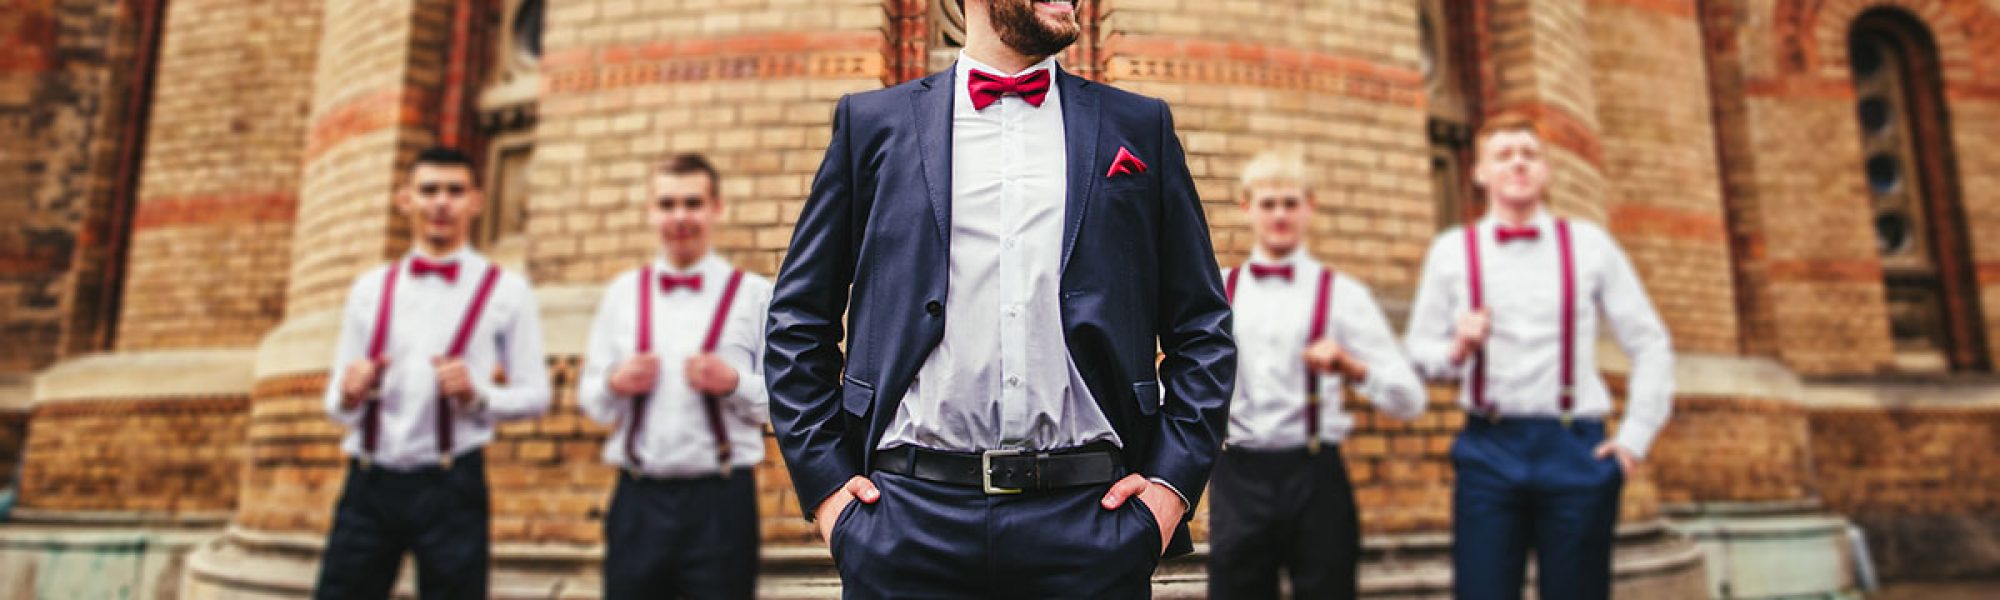 groom with red bowtie standing in front of groomsmen wearing suspenders